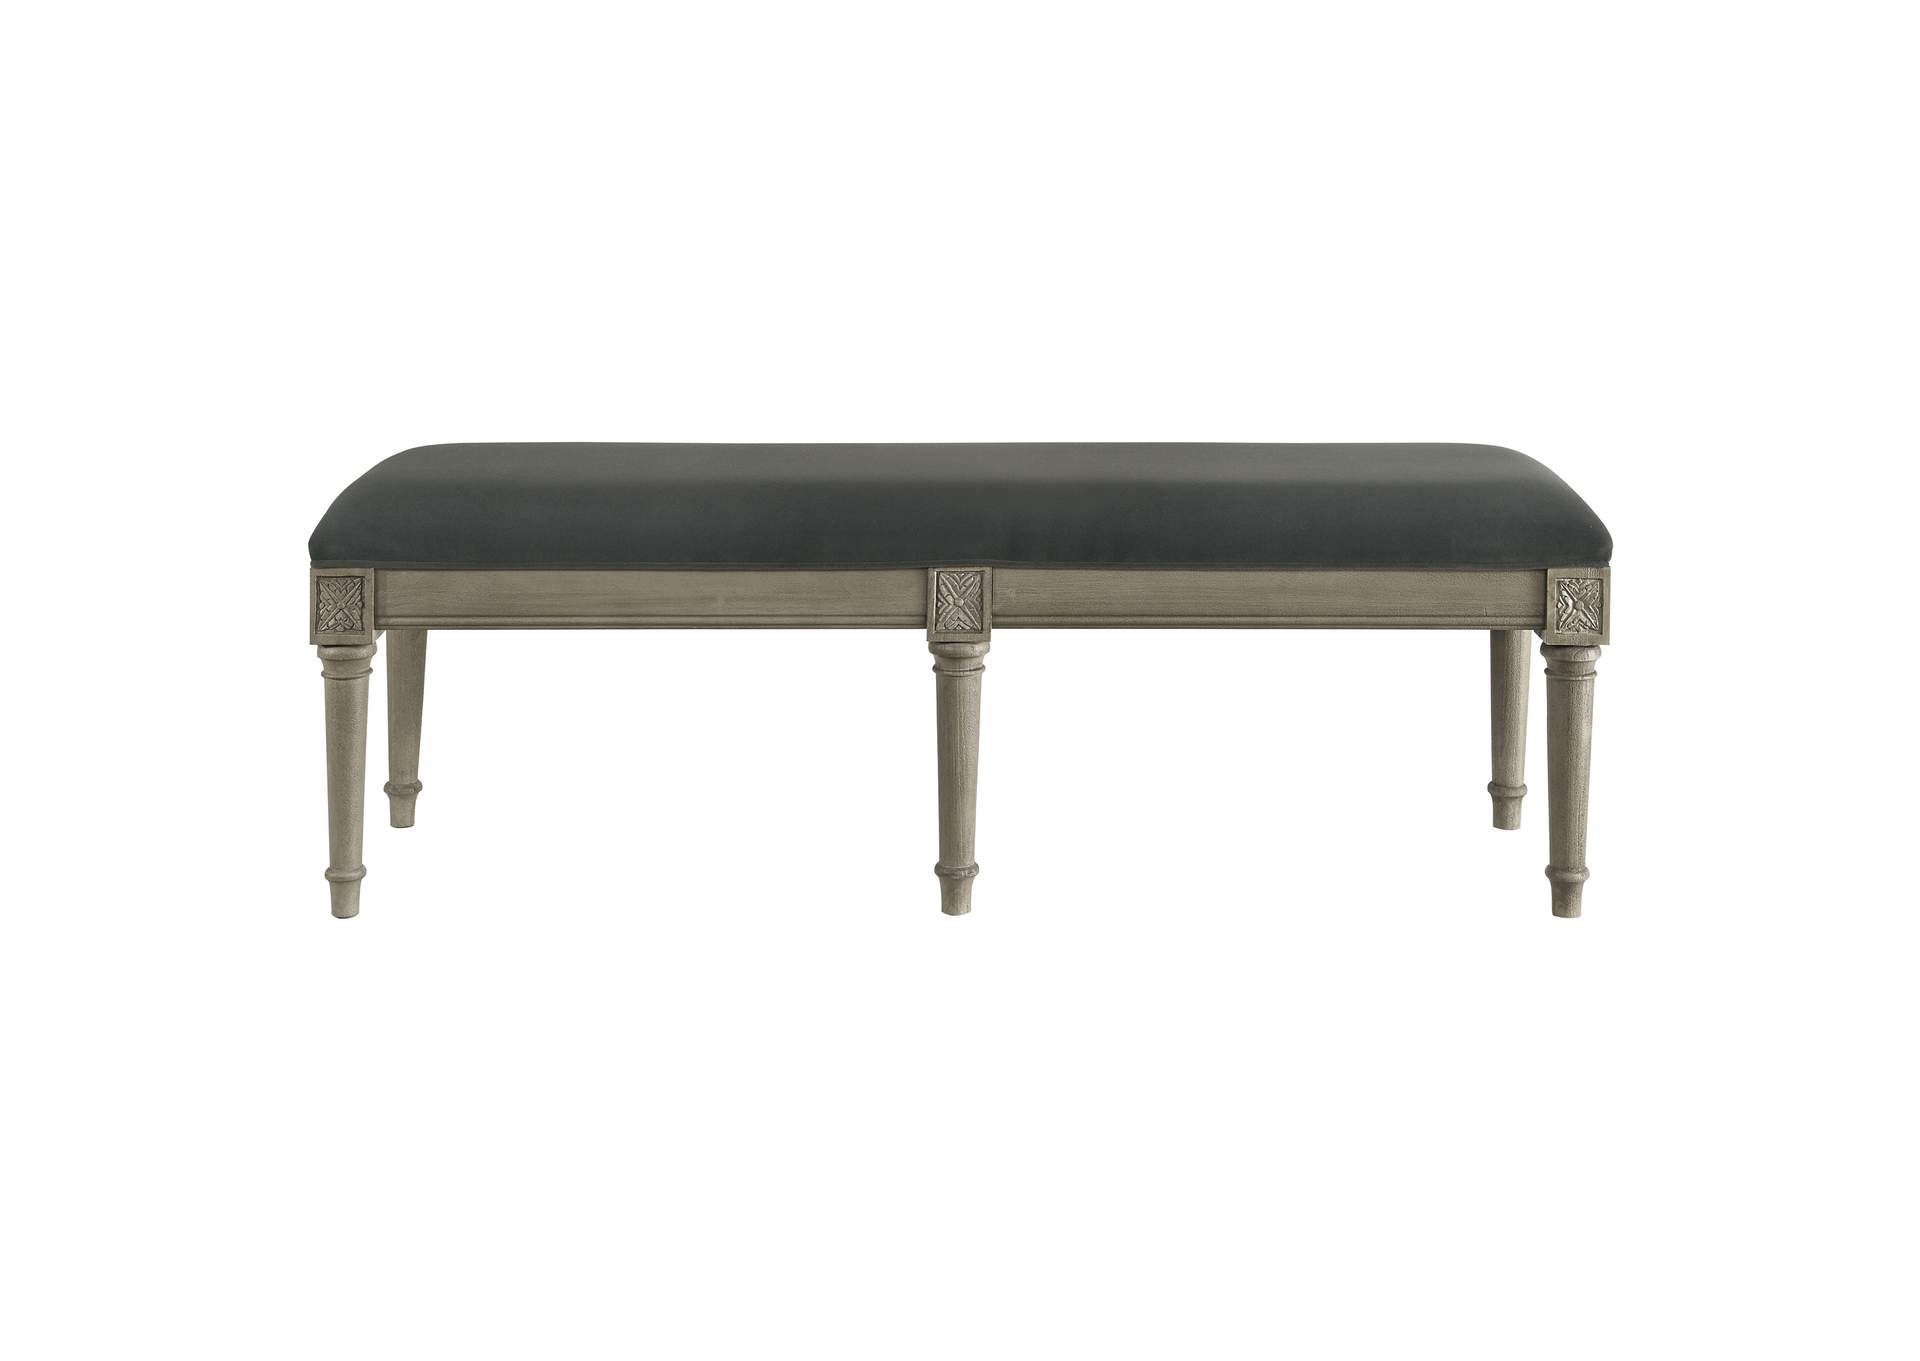 Alderwood Upholstered Bench French Grey,Coaster Furniture